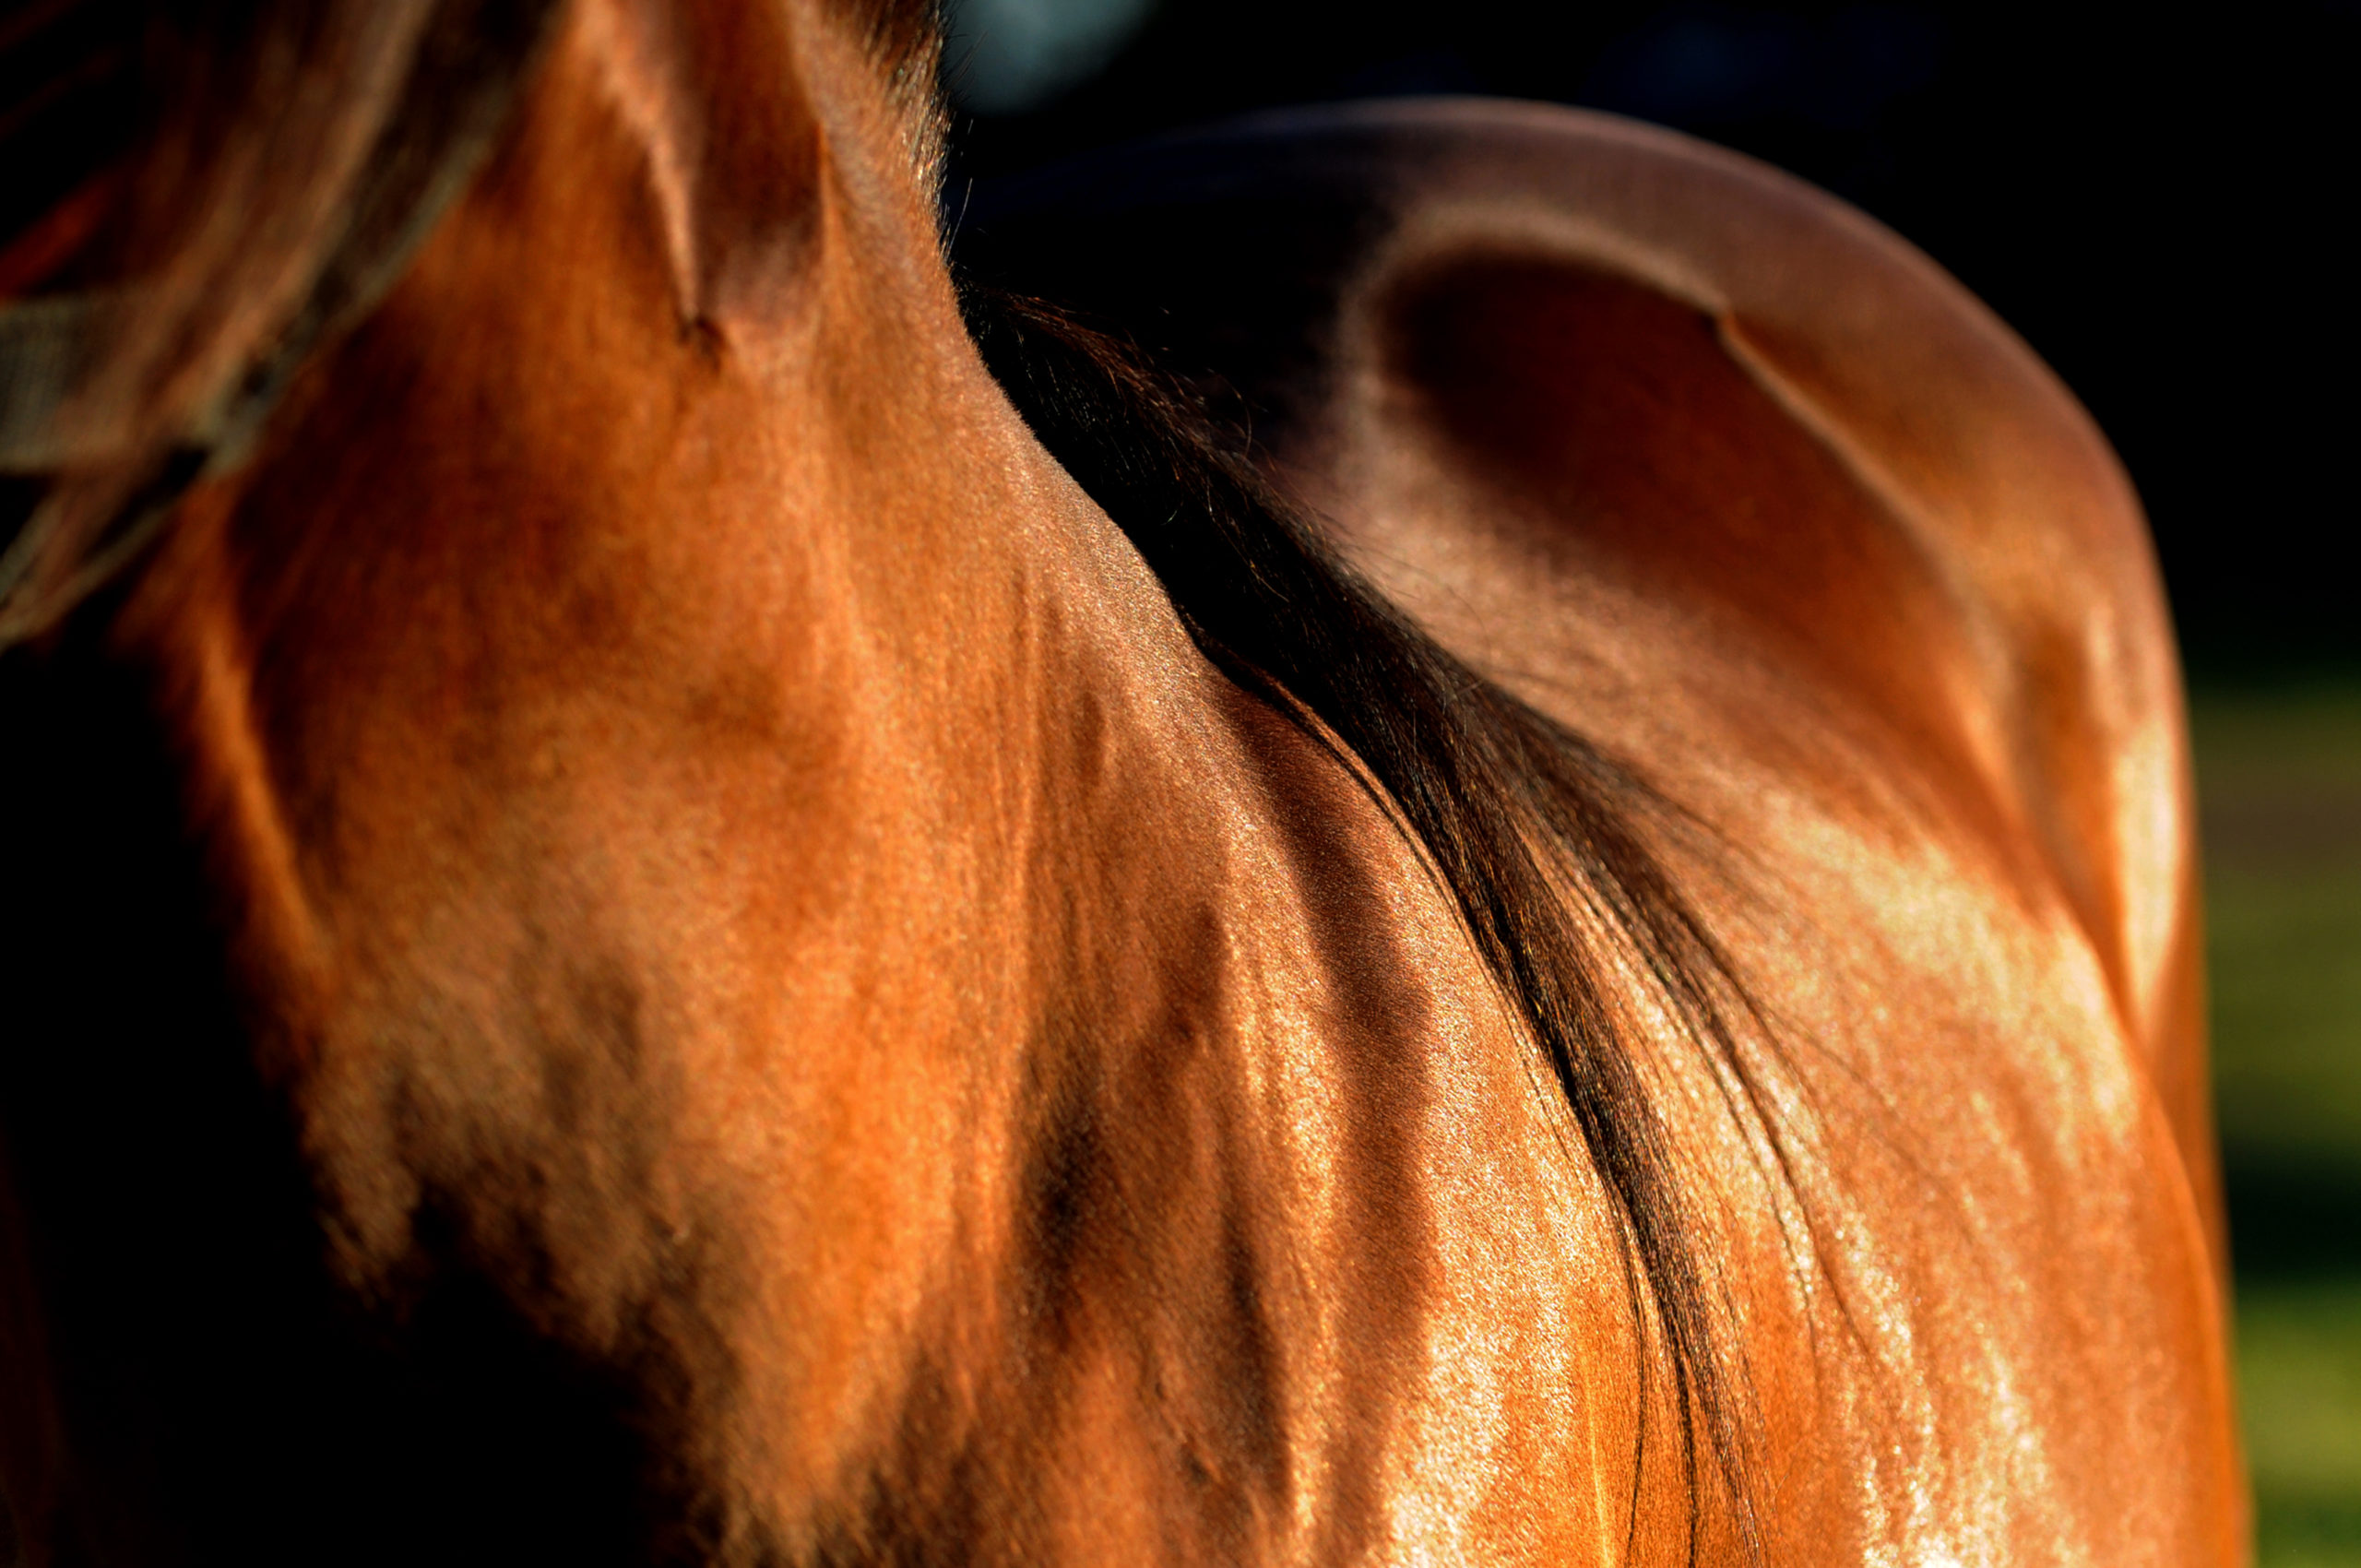 Om din häst har hudtumör kan det vara dags med ett besök till veterinären